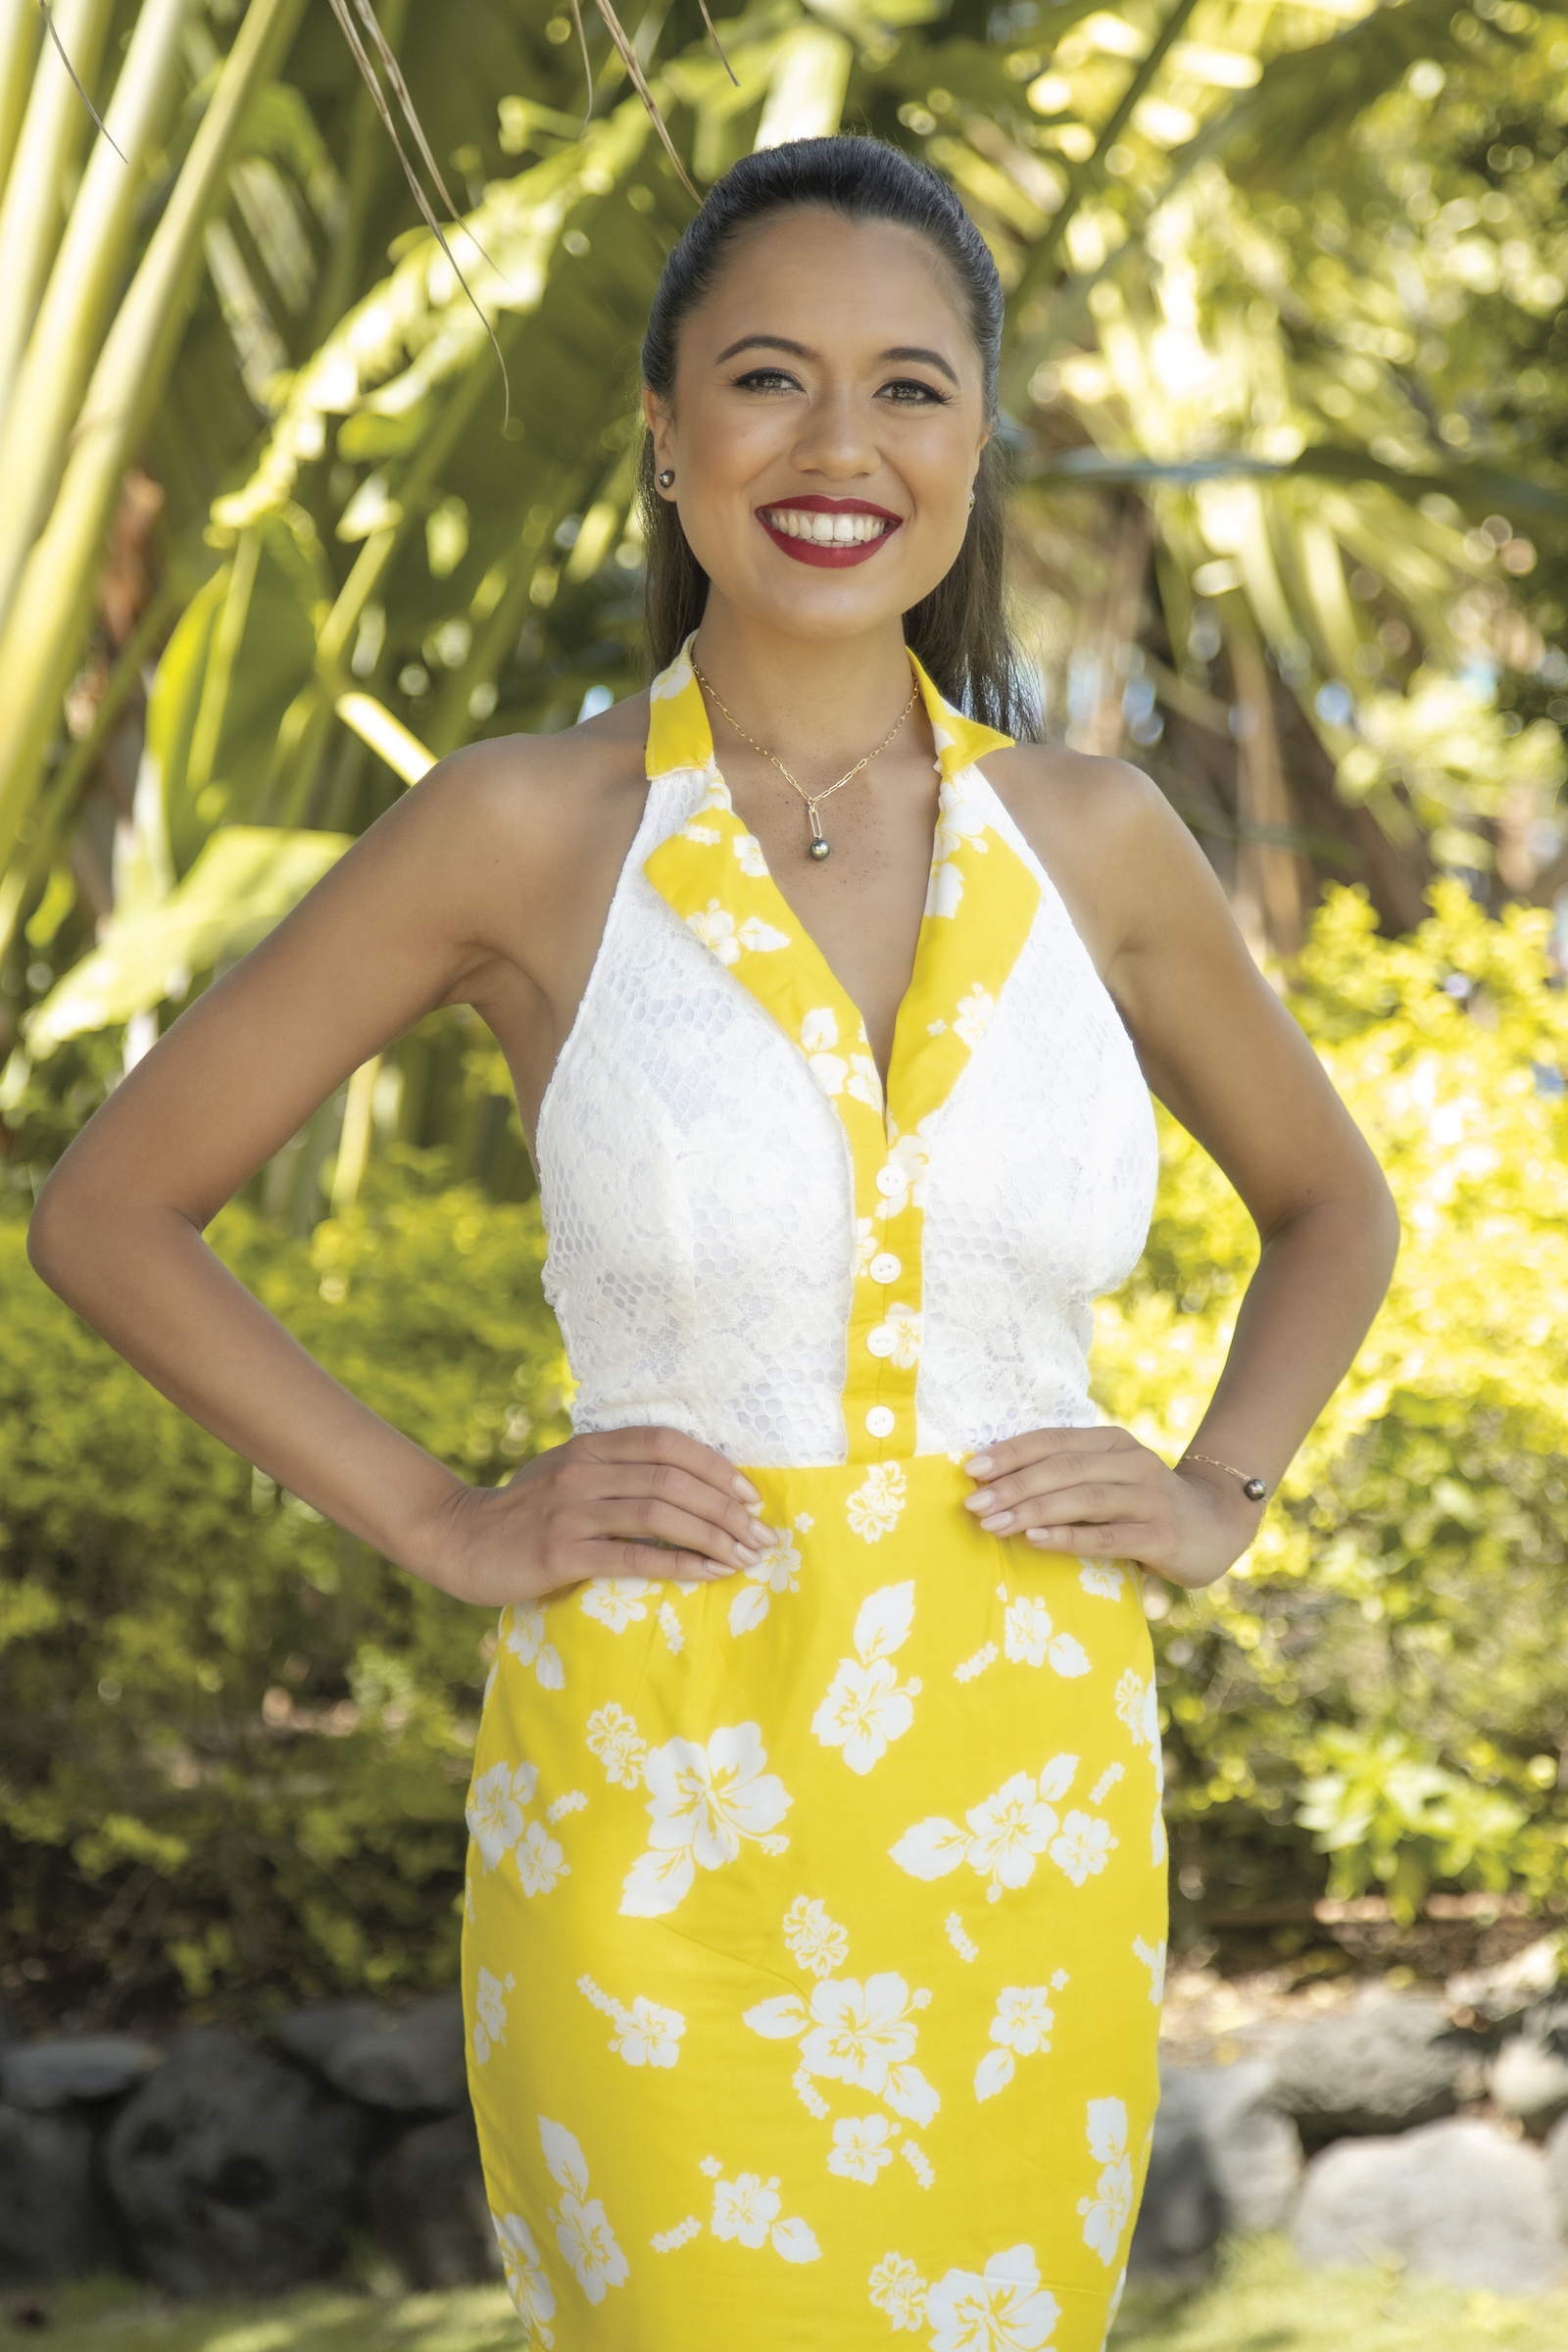 Découvrez les candidates à Miss Tahiti 2022